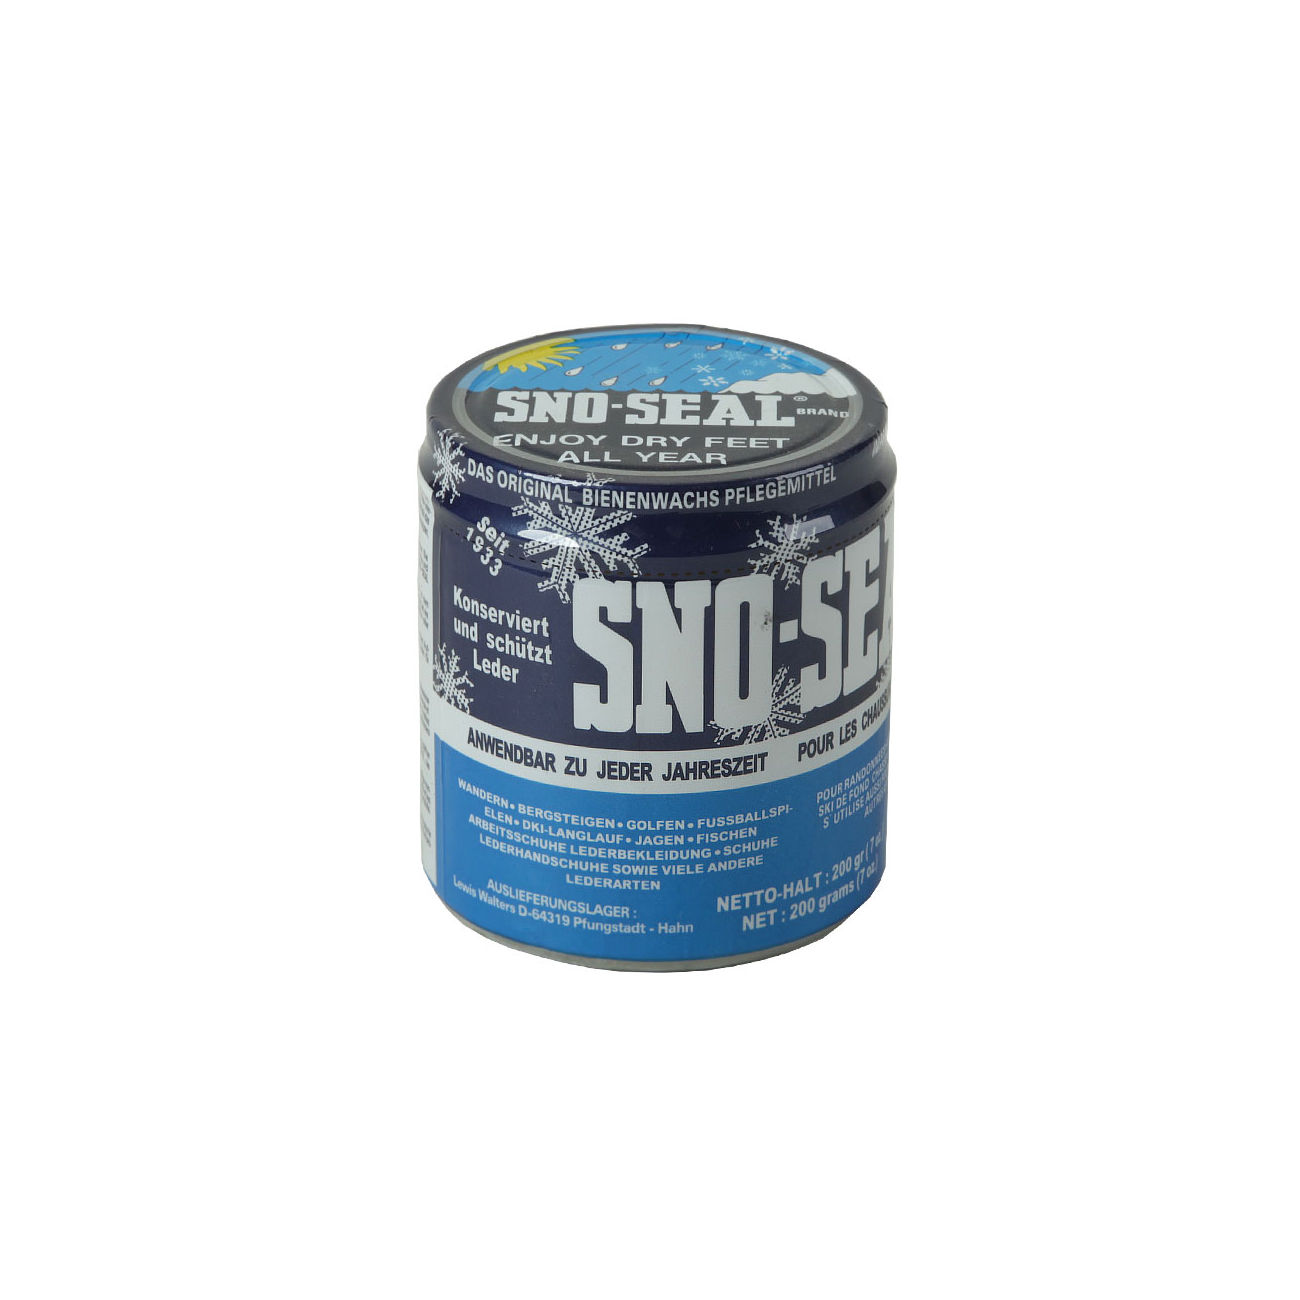 Sno-Seal Bienenwachs Lederpflegemittel 200 g Dose